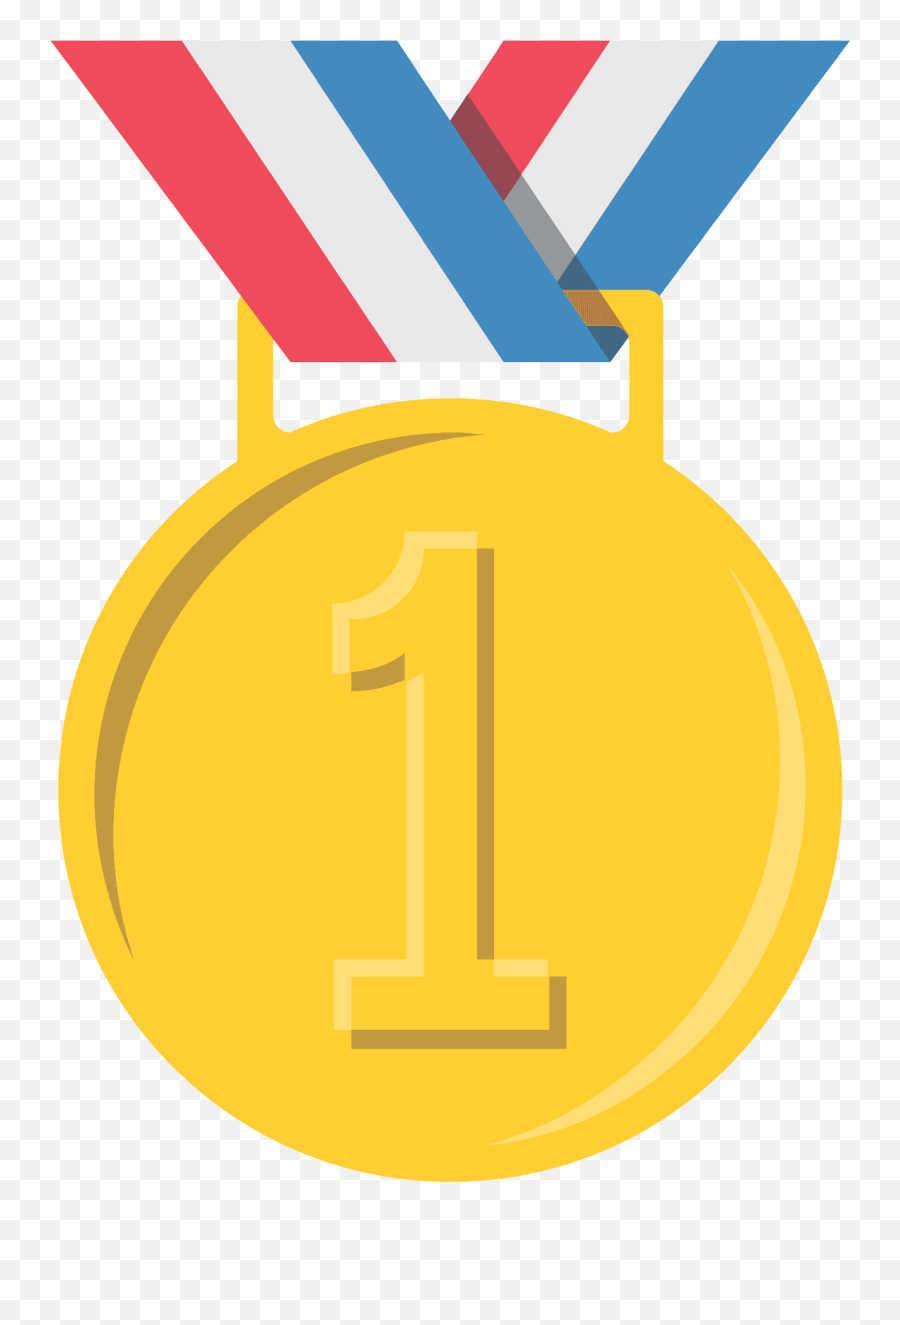 1st Place Medal Emoji Clipart - 1st Place Medal Emoji,Number 1 Emoji